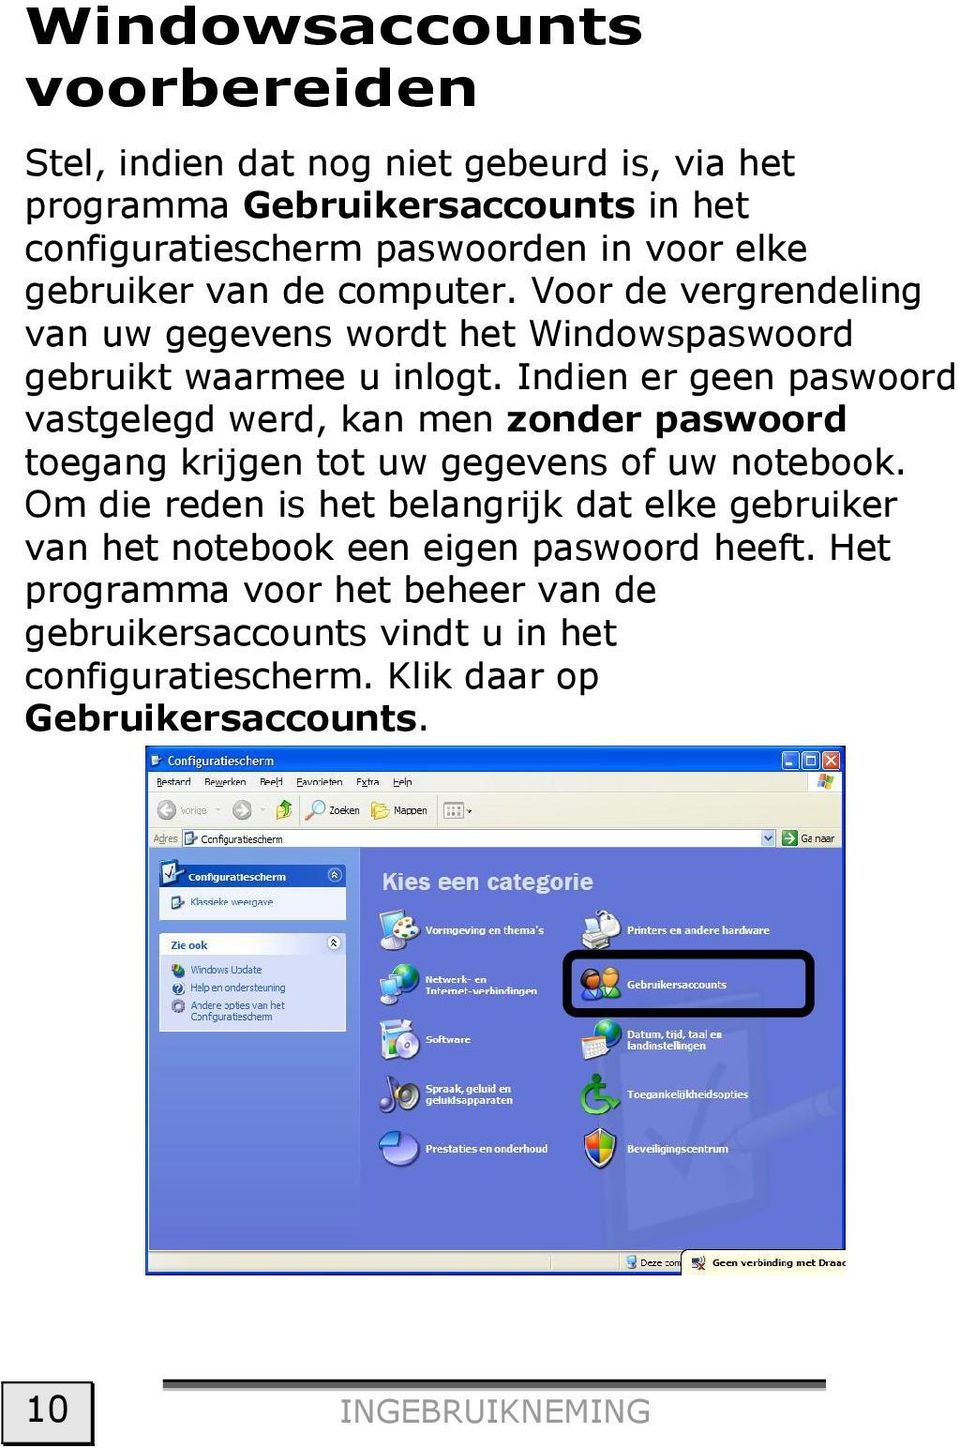 Indien er geen paswoord vastgelegd werd, kan men zonder paswoord toegang krijgen tot uw gegevens of uw notebook.